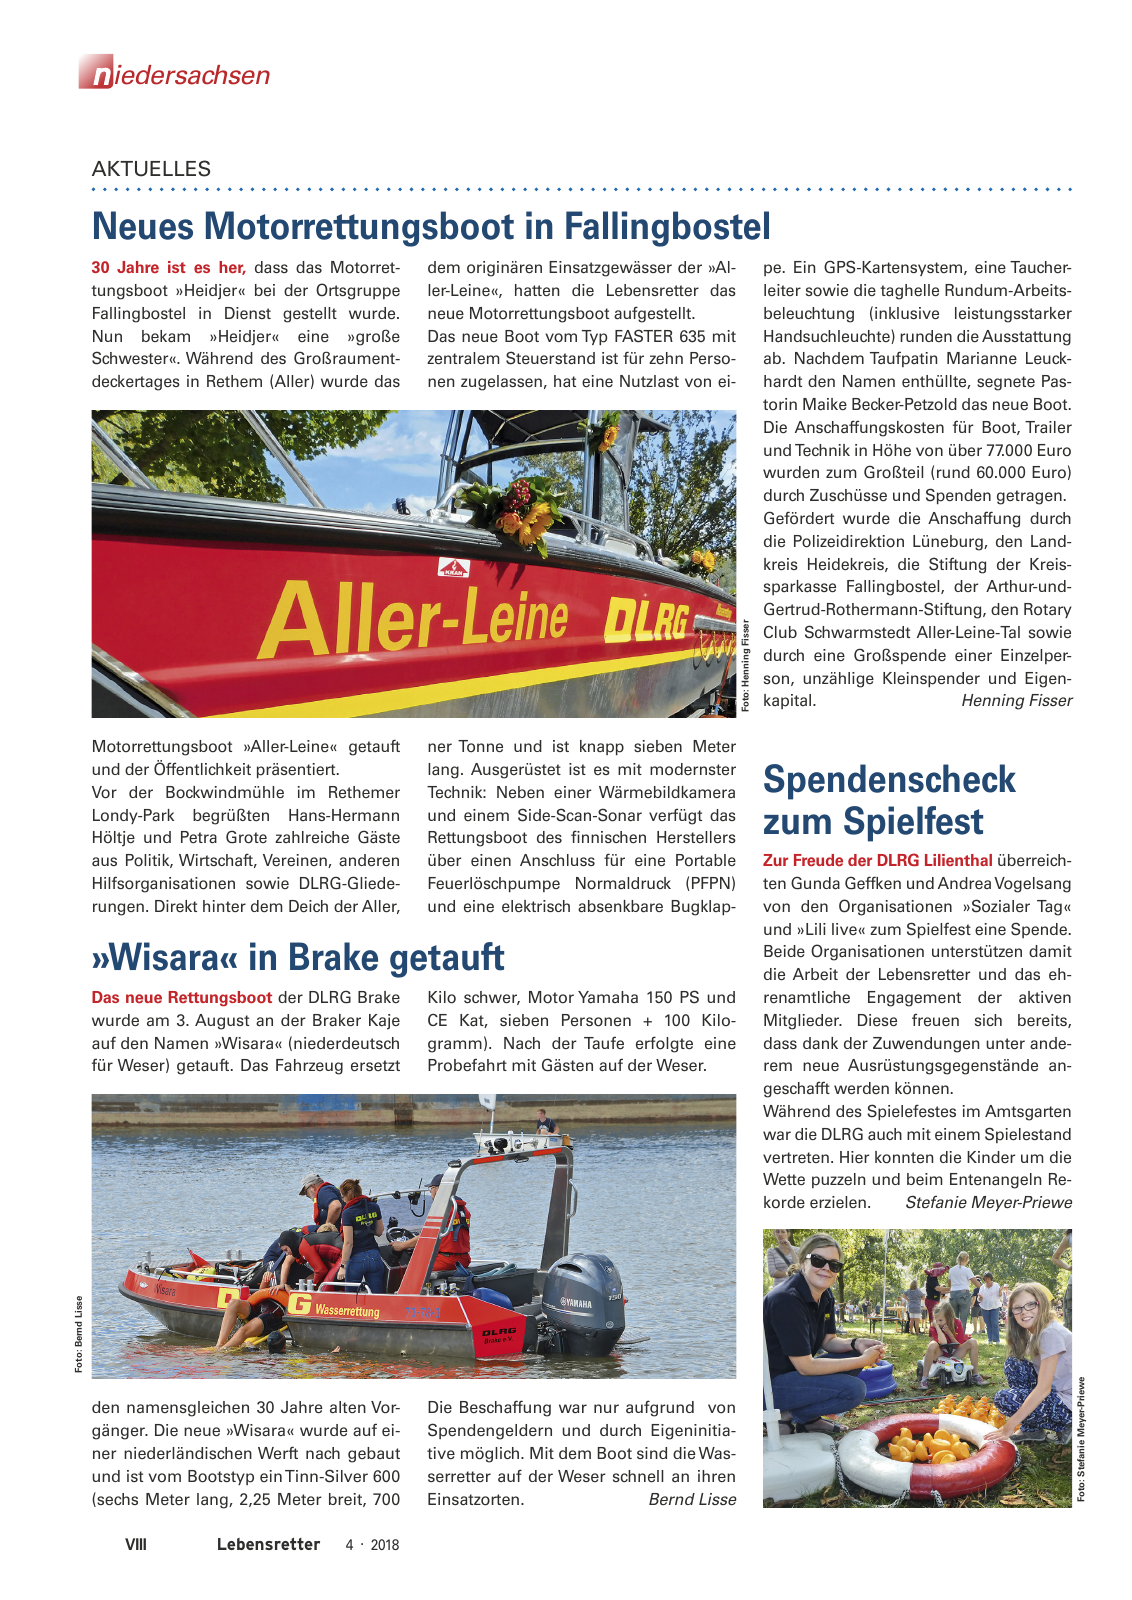 Vorschau Lebensretter 4/2018 - Regionalausgabe Niedersachsen Seite 10